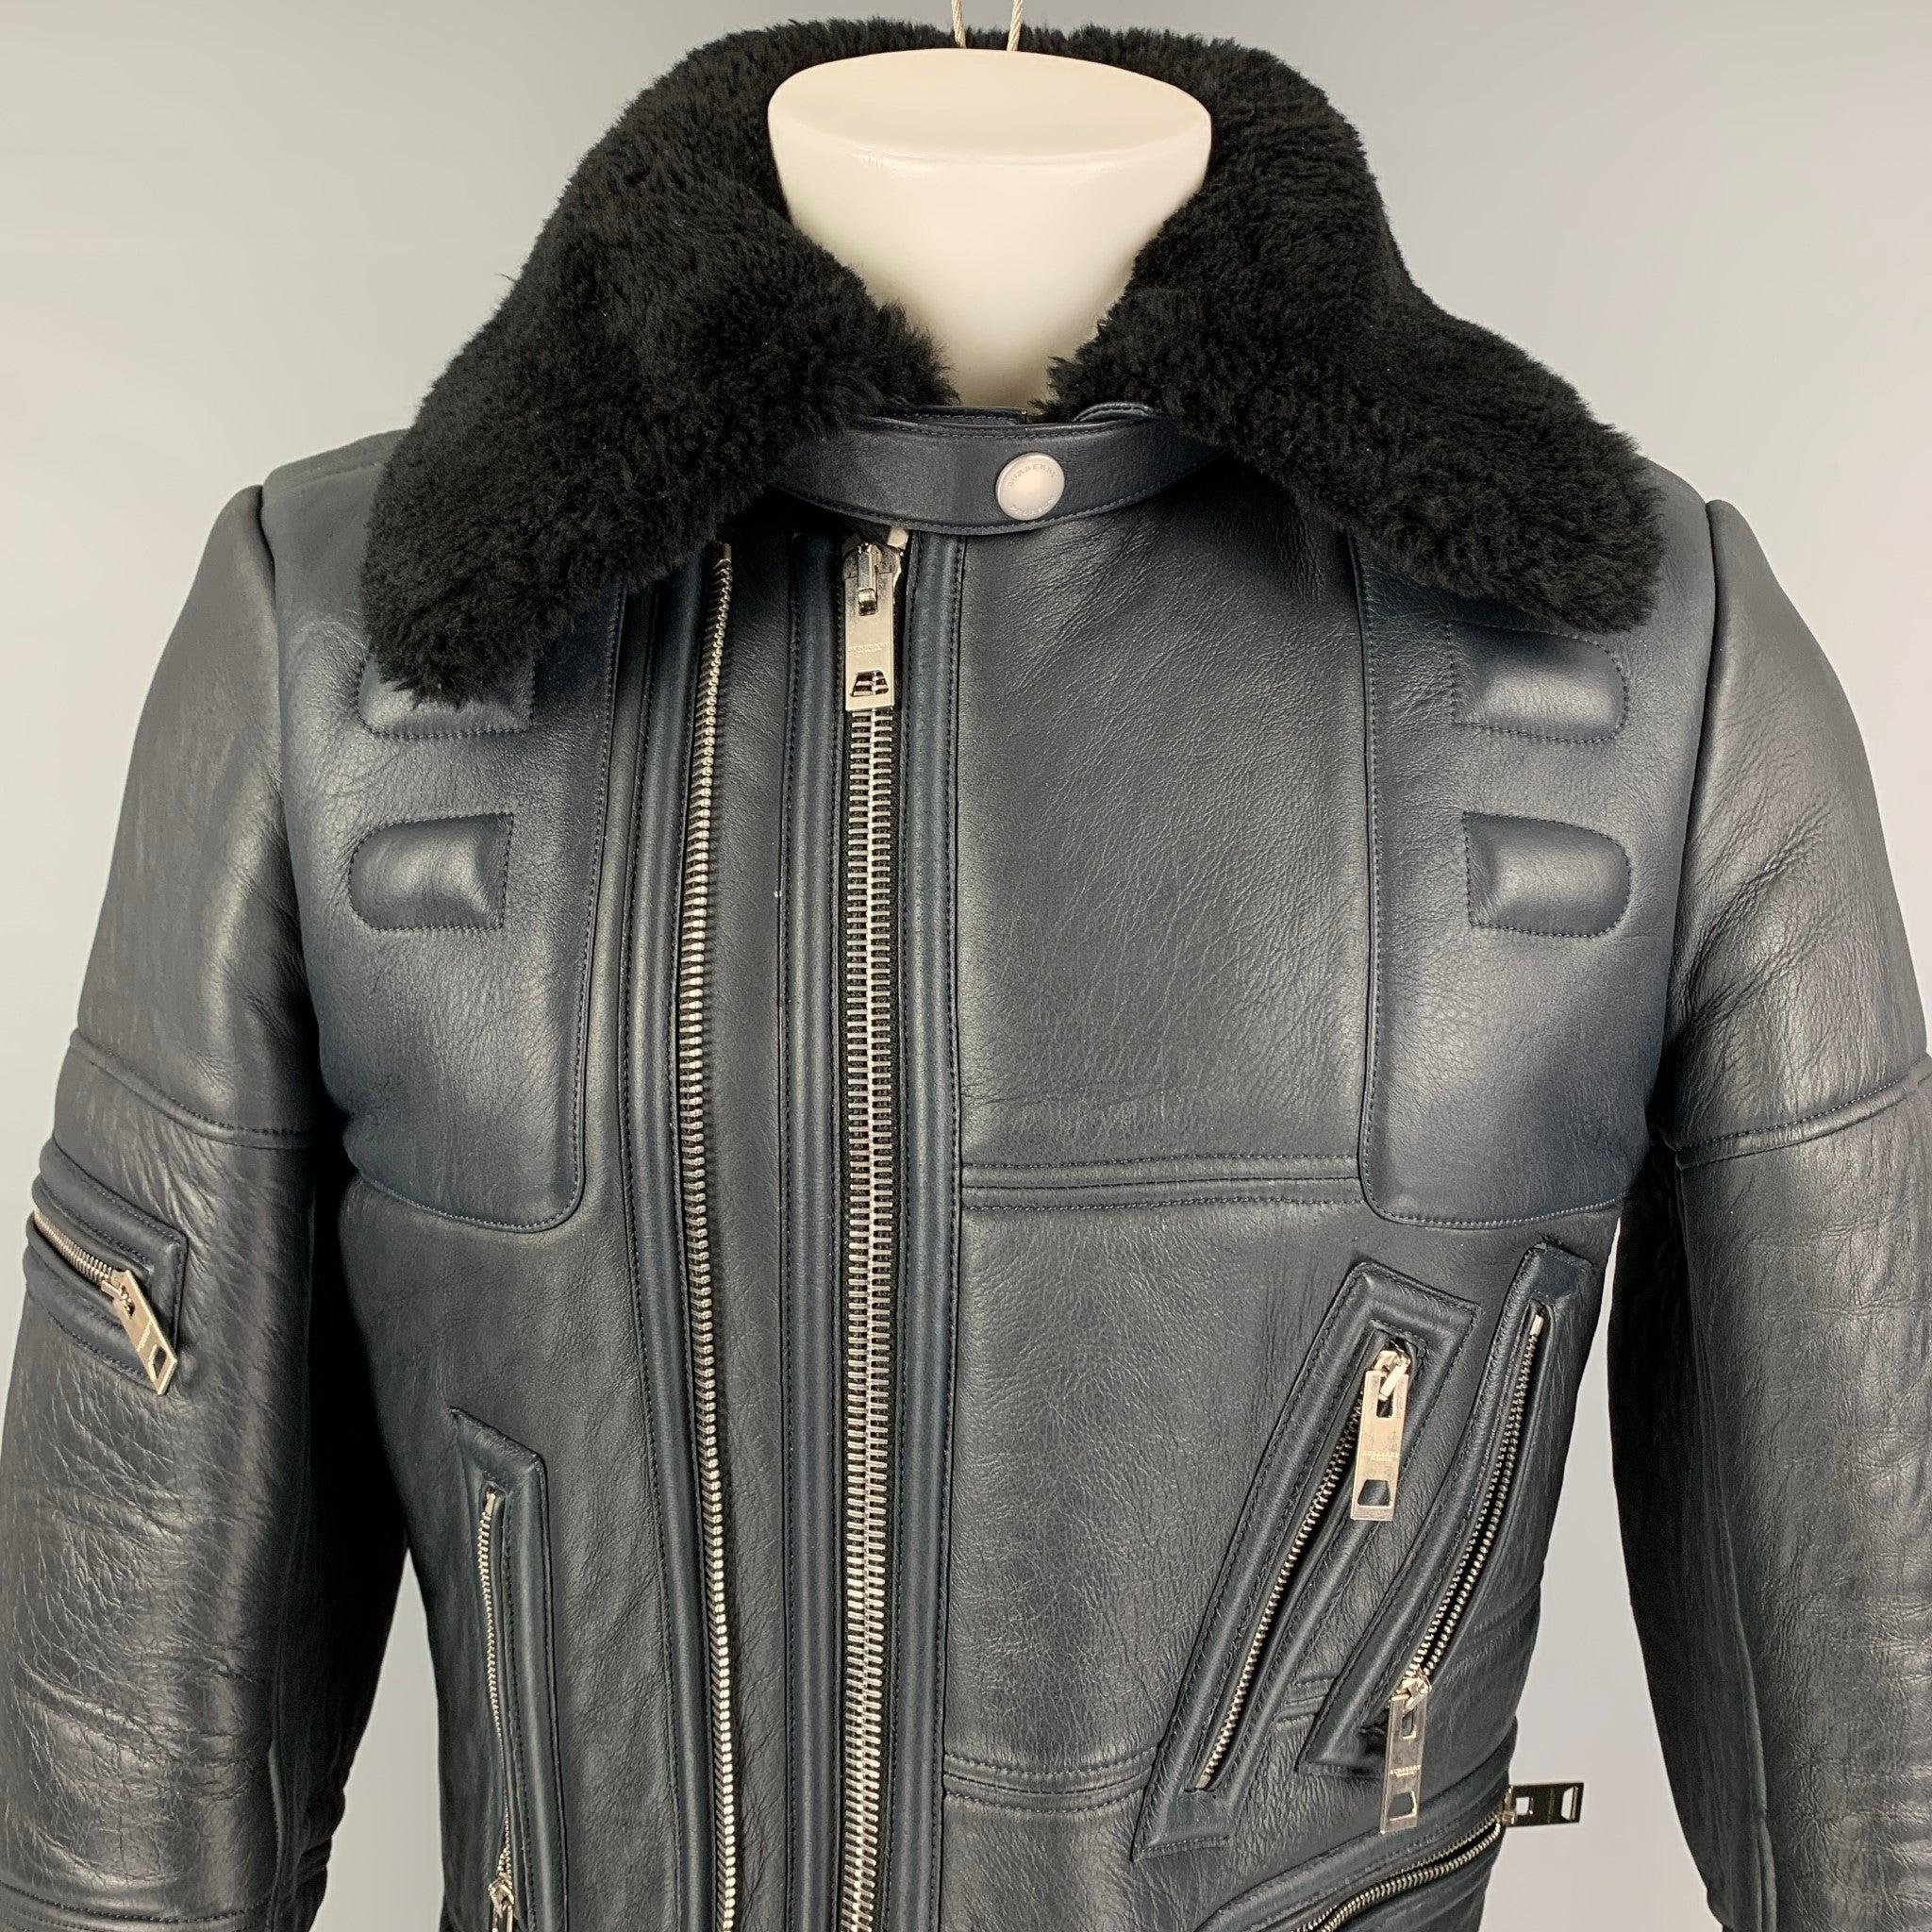 La veste PRORSUM FW 2010 de Burberry est réalisée en cuir d'agneau bleu foncé. Elle présente un style motard, un col en mouton noir, des détails paddés, des ferrures argentées, une ceinture, des poches zippées, des poignets zippés et une double